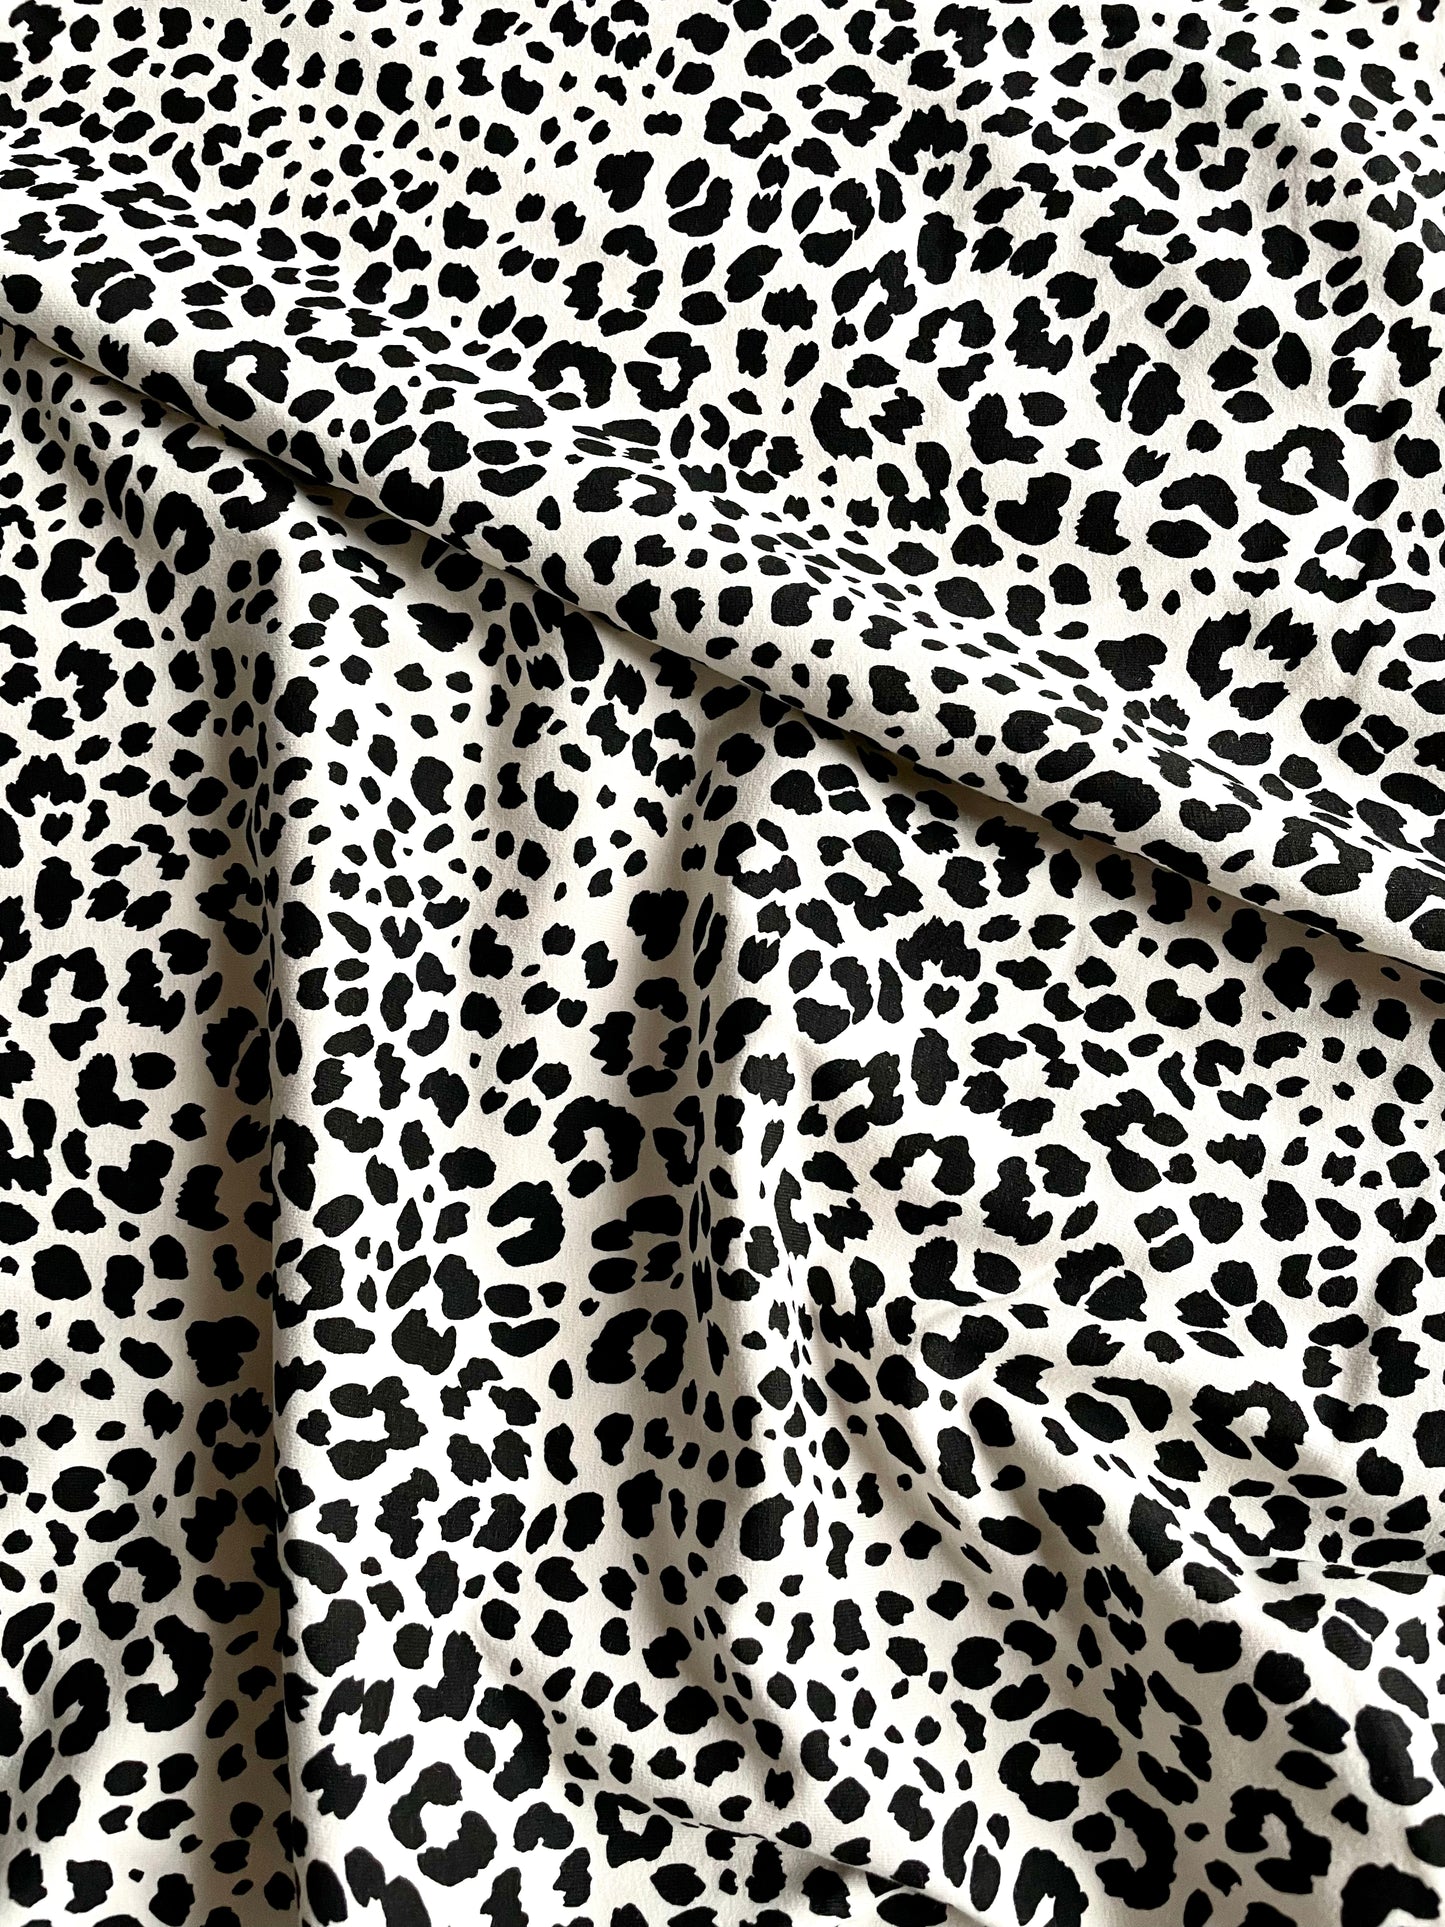 Leopard Print Cotton Jersey - Cream - REMNANT - 105cm x 150cm